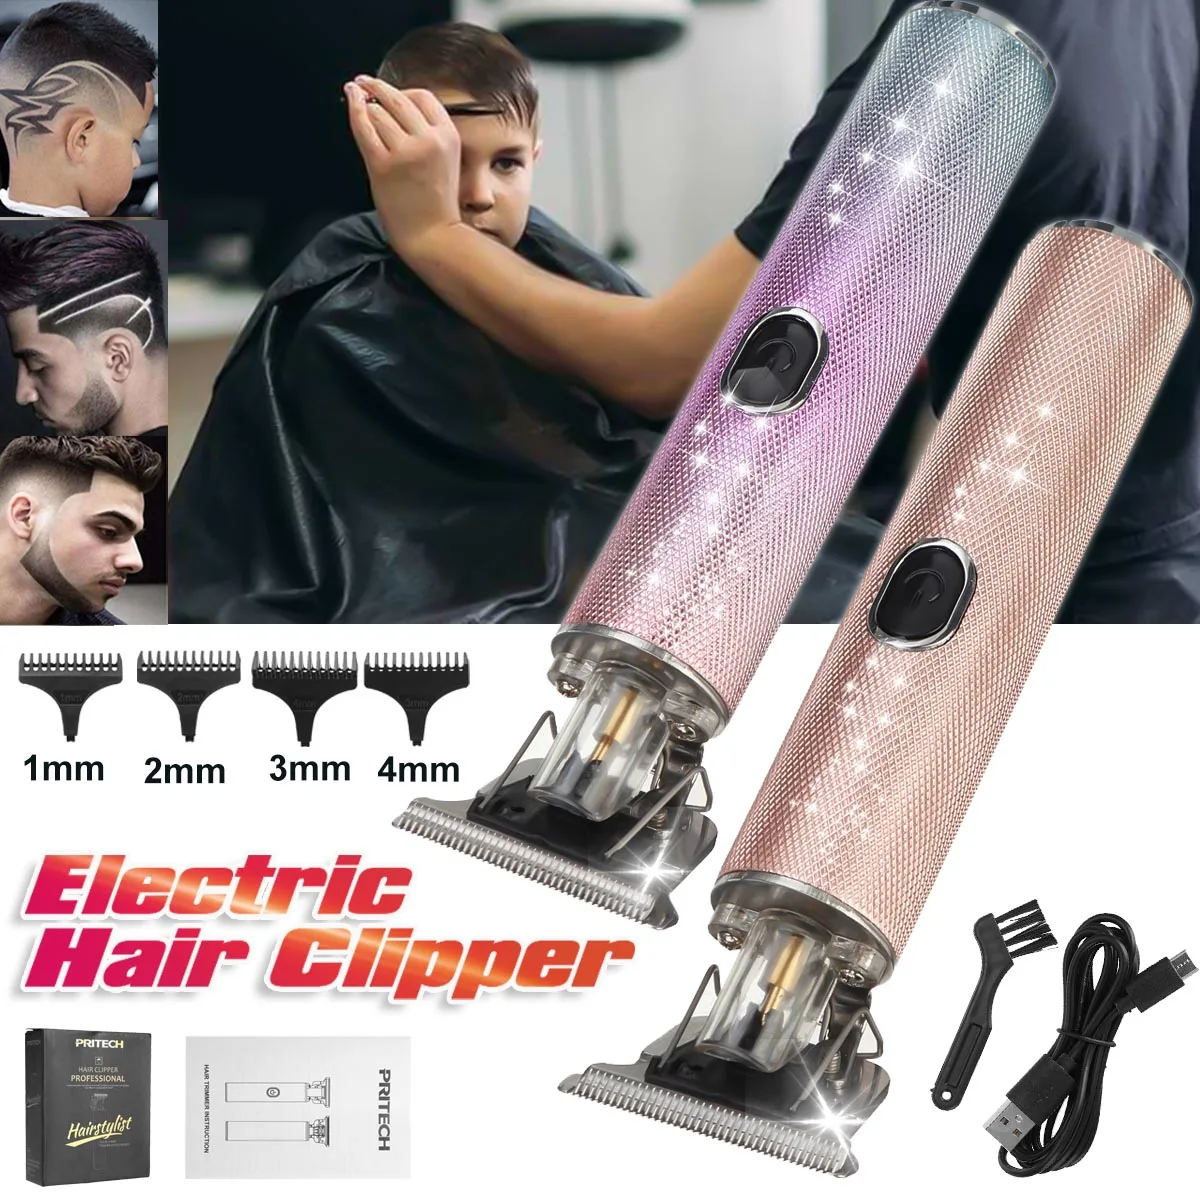 

Электромашинка для стрижки волос, профессиональная машинка для стрижки волос, триммер для носа для мужчин Парикмахерская электробритва за...